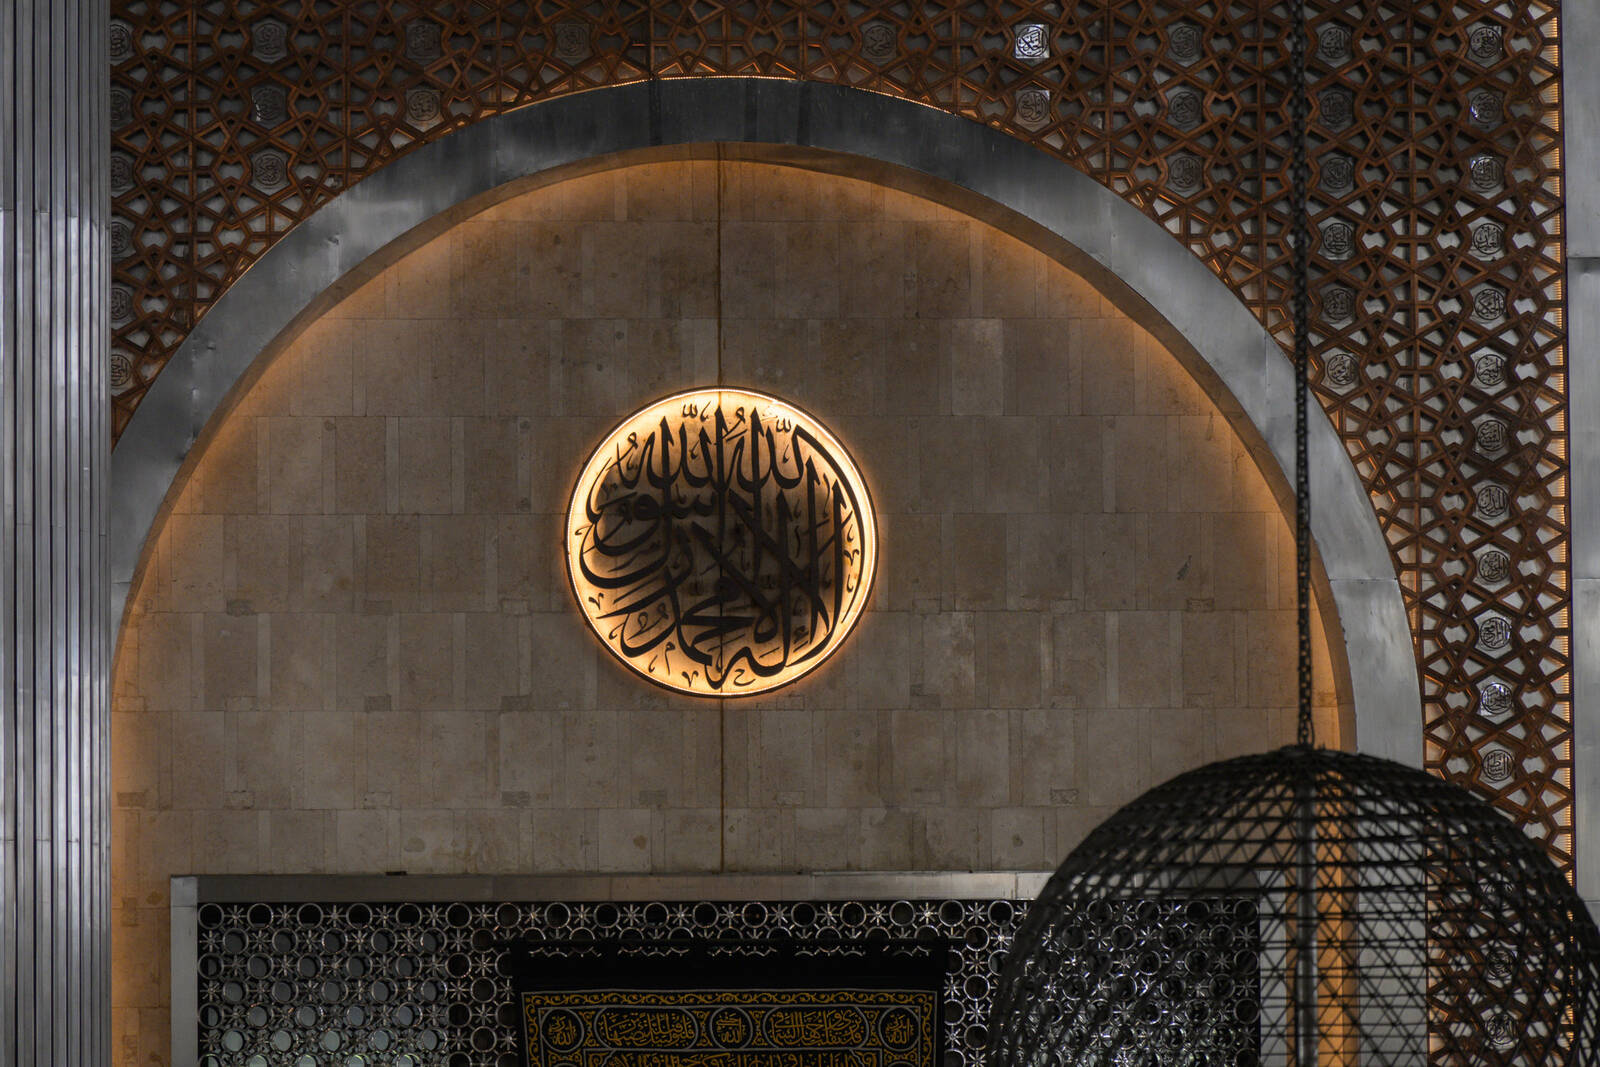 Image of Istiqlal Mosque by Luka Esenko